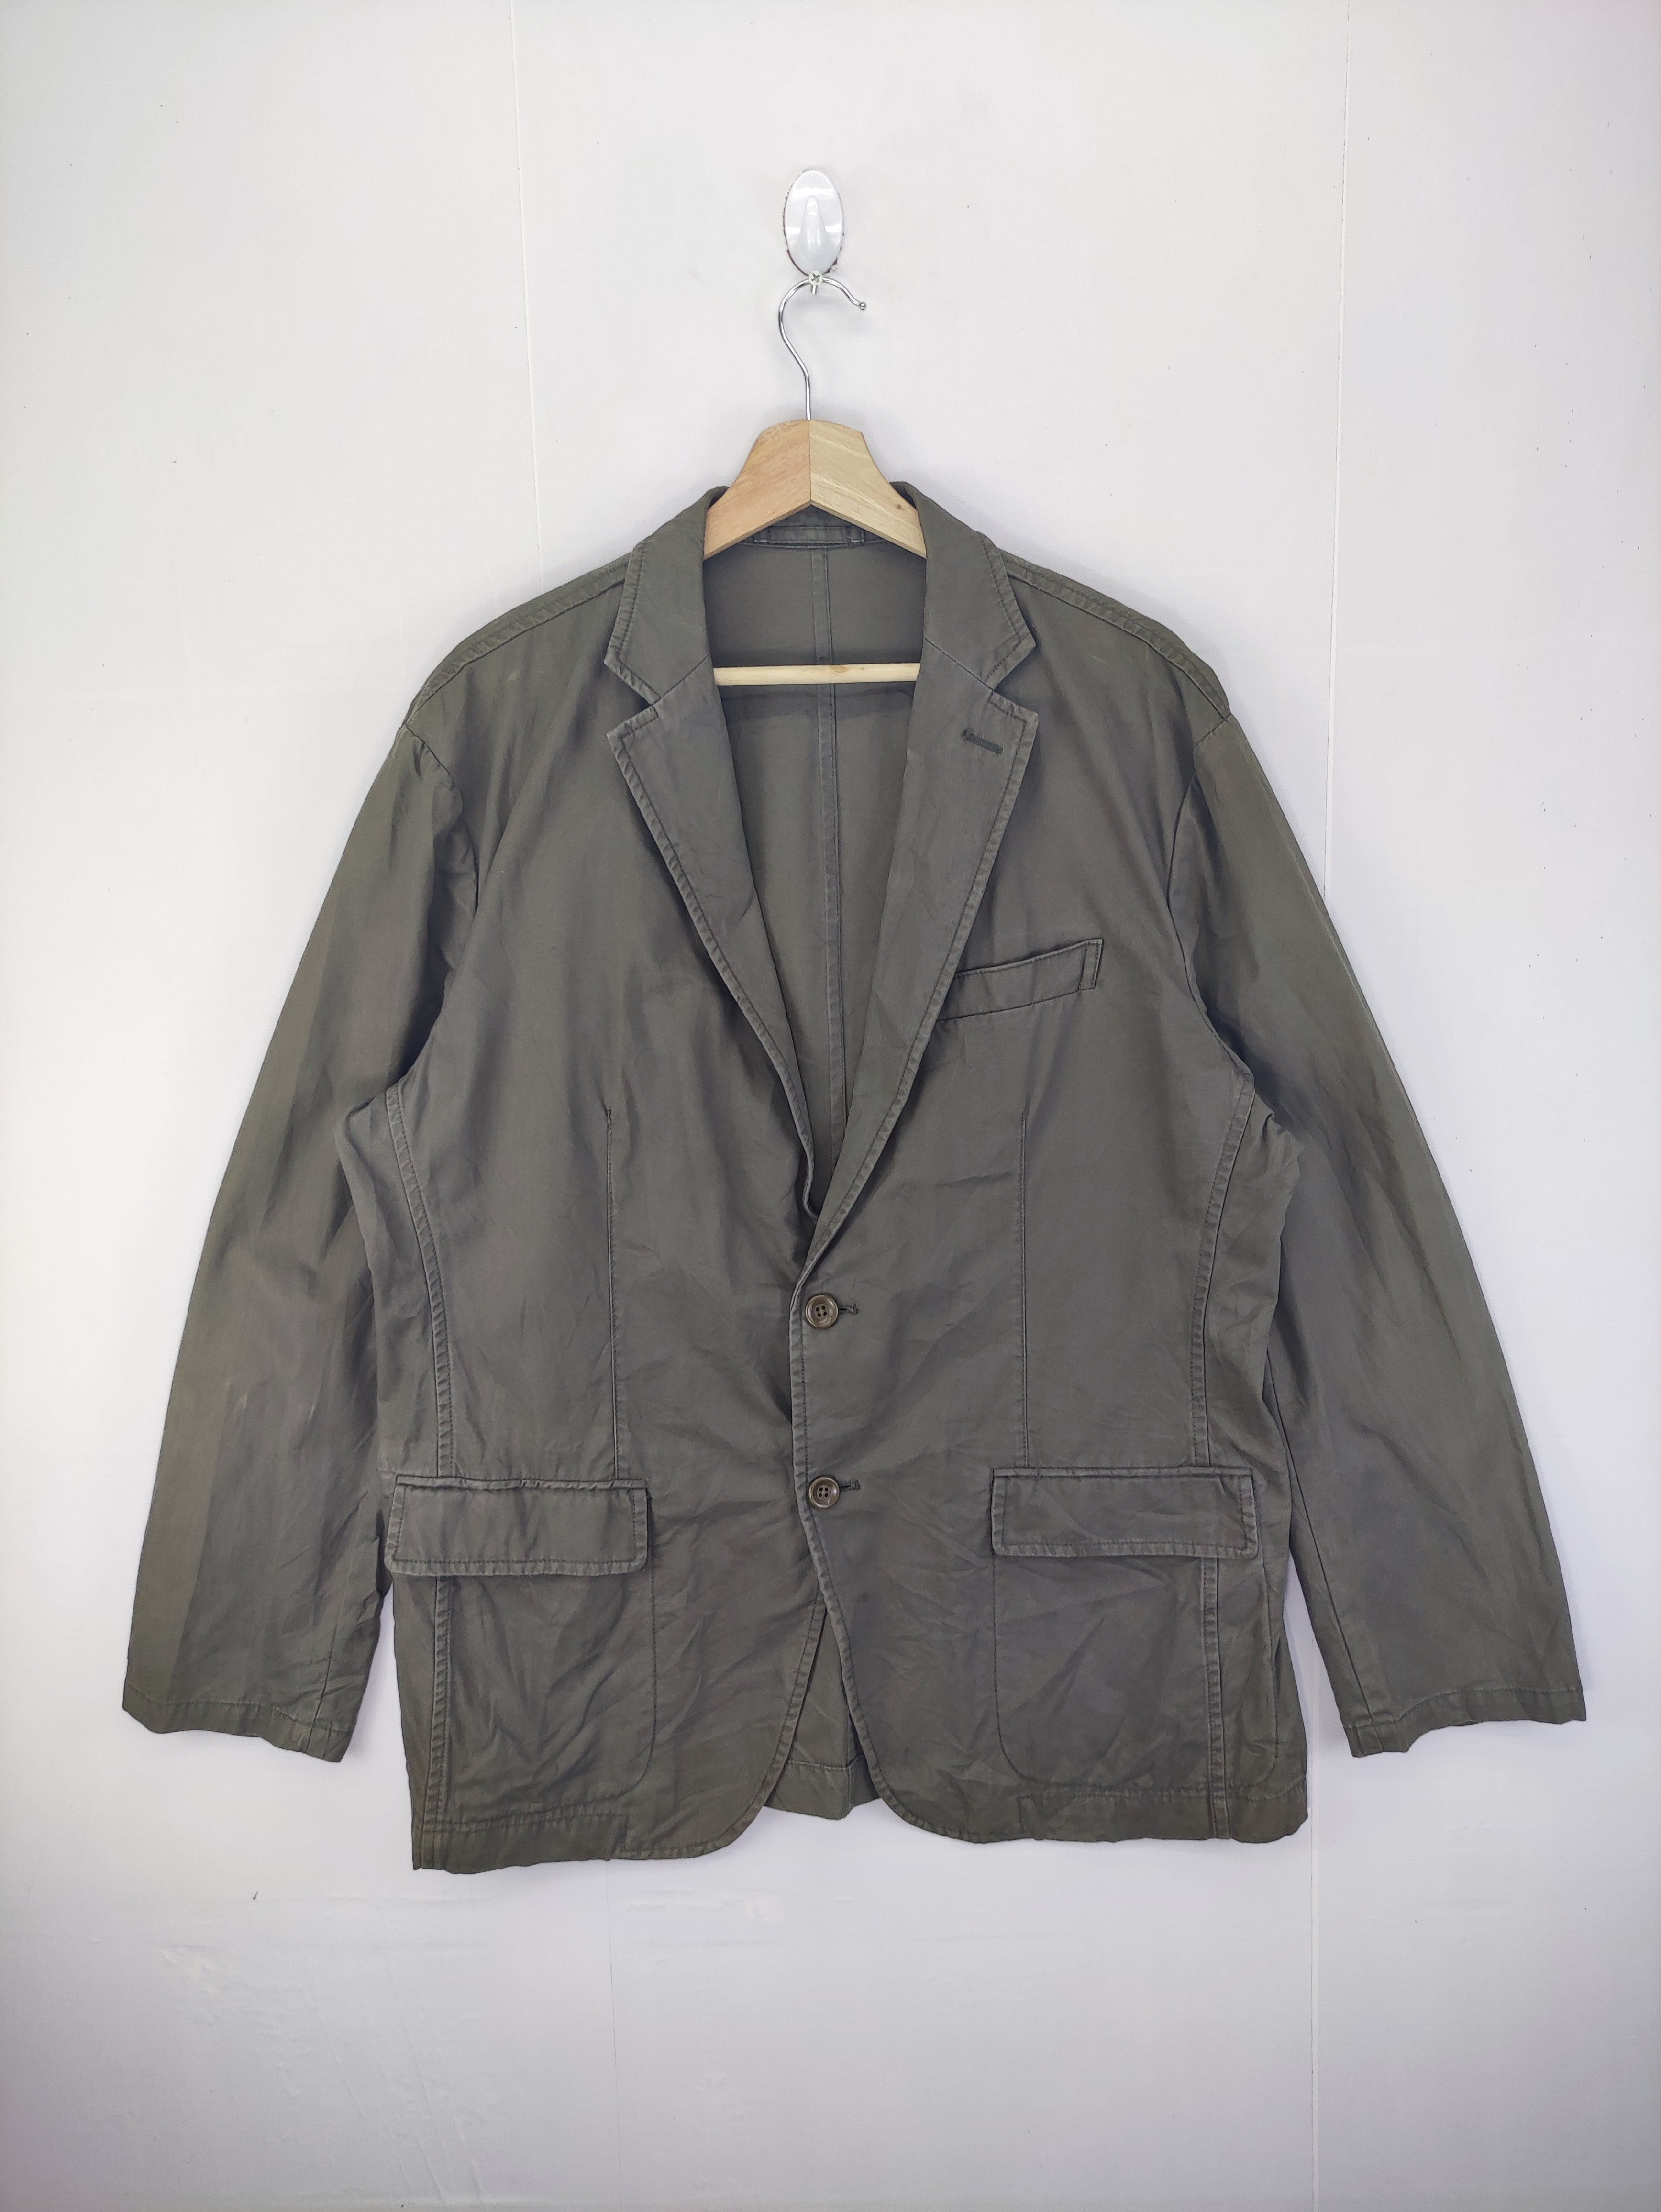 Vintage Uniqlo Chore Jacket Coat - 1